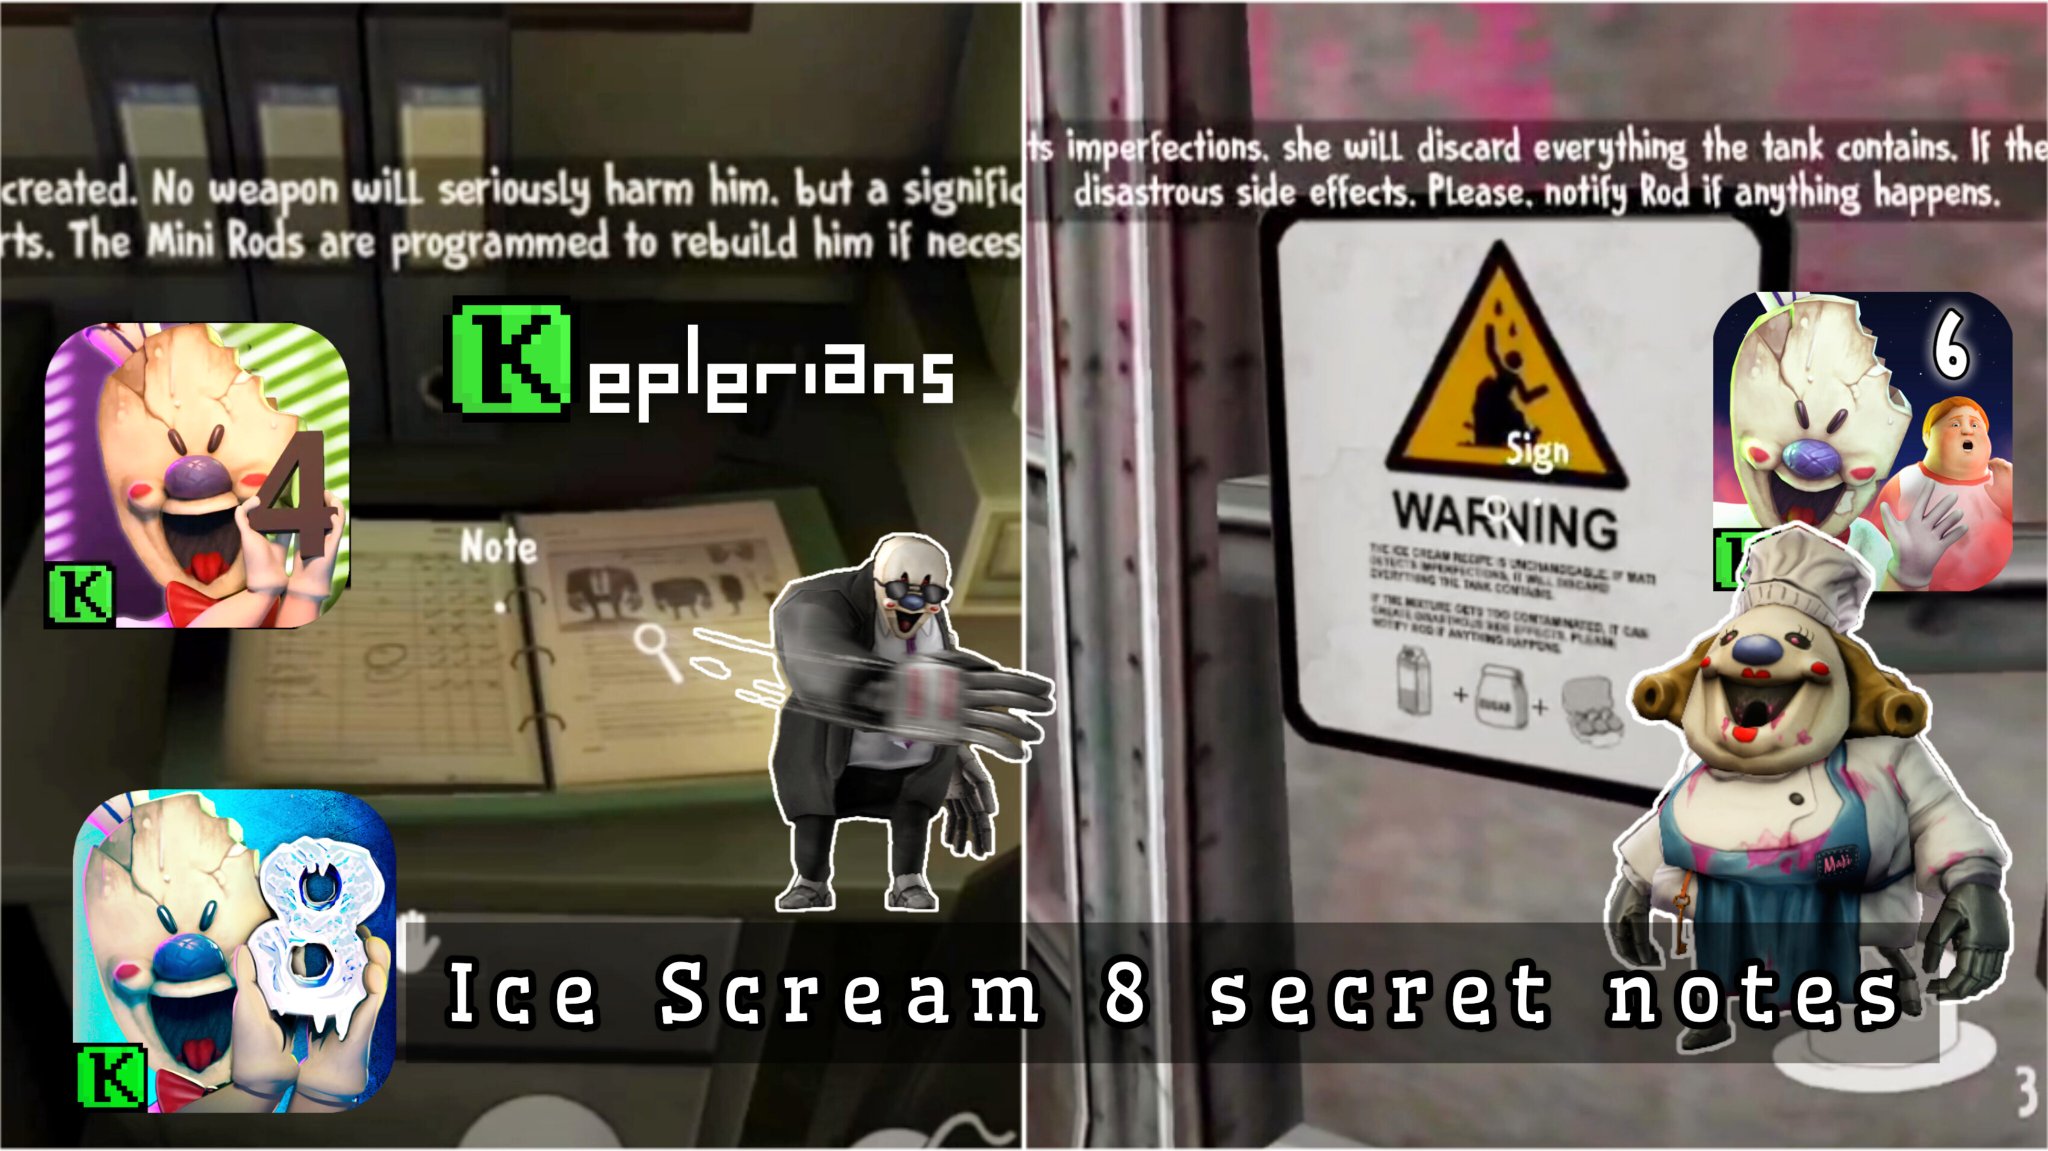 Caffeinated Gamer YT 300K🎮 on X: New Ice Scream 8 secret notes 🍦   #CaffeinatedGamer #Keplerians #IceScream   / X